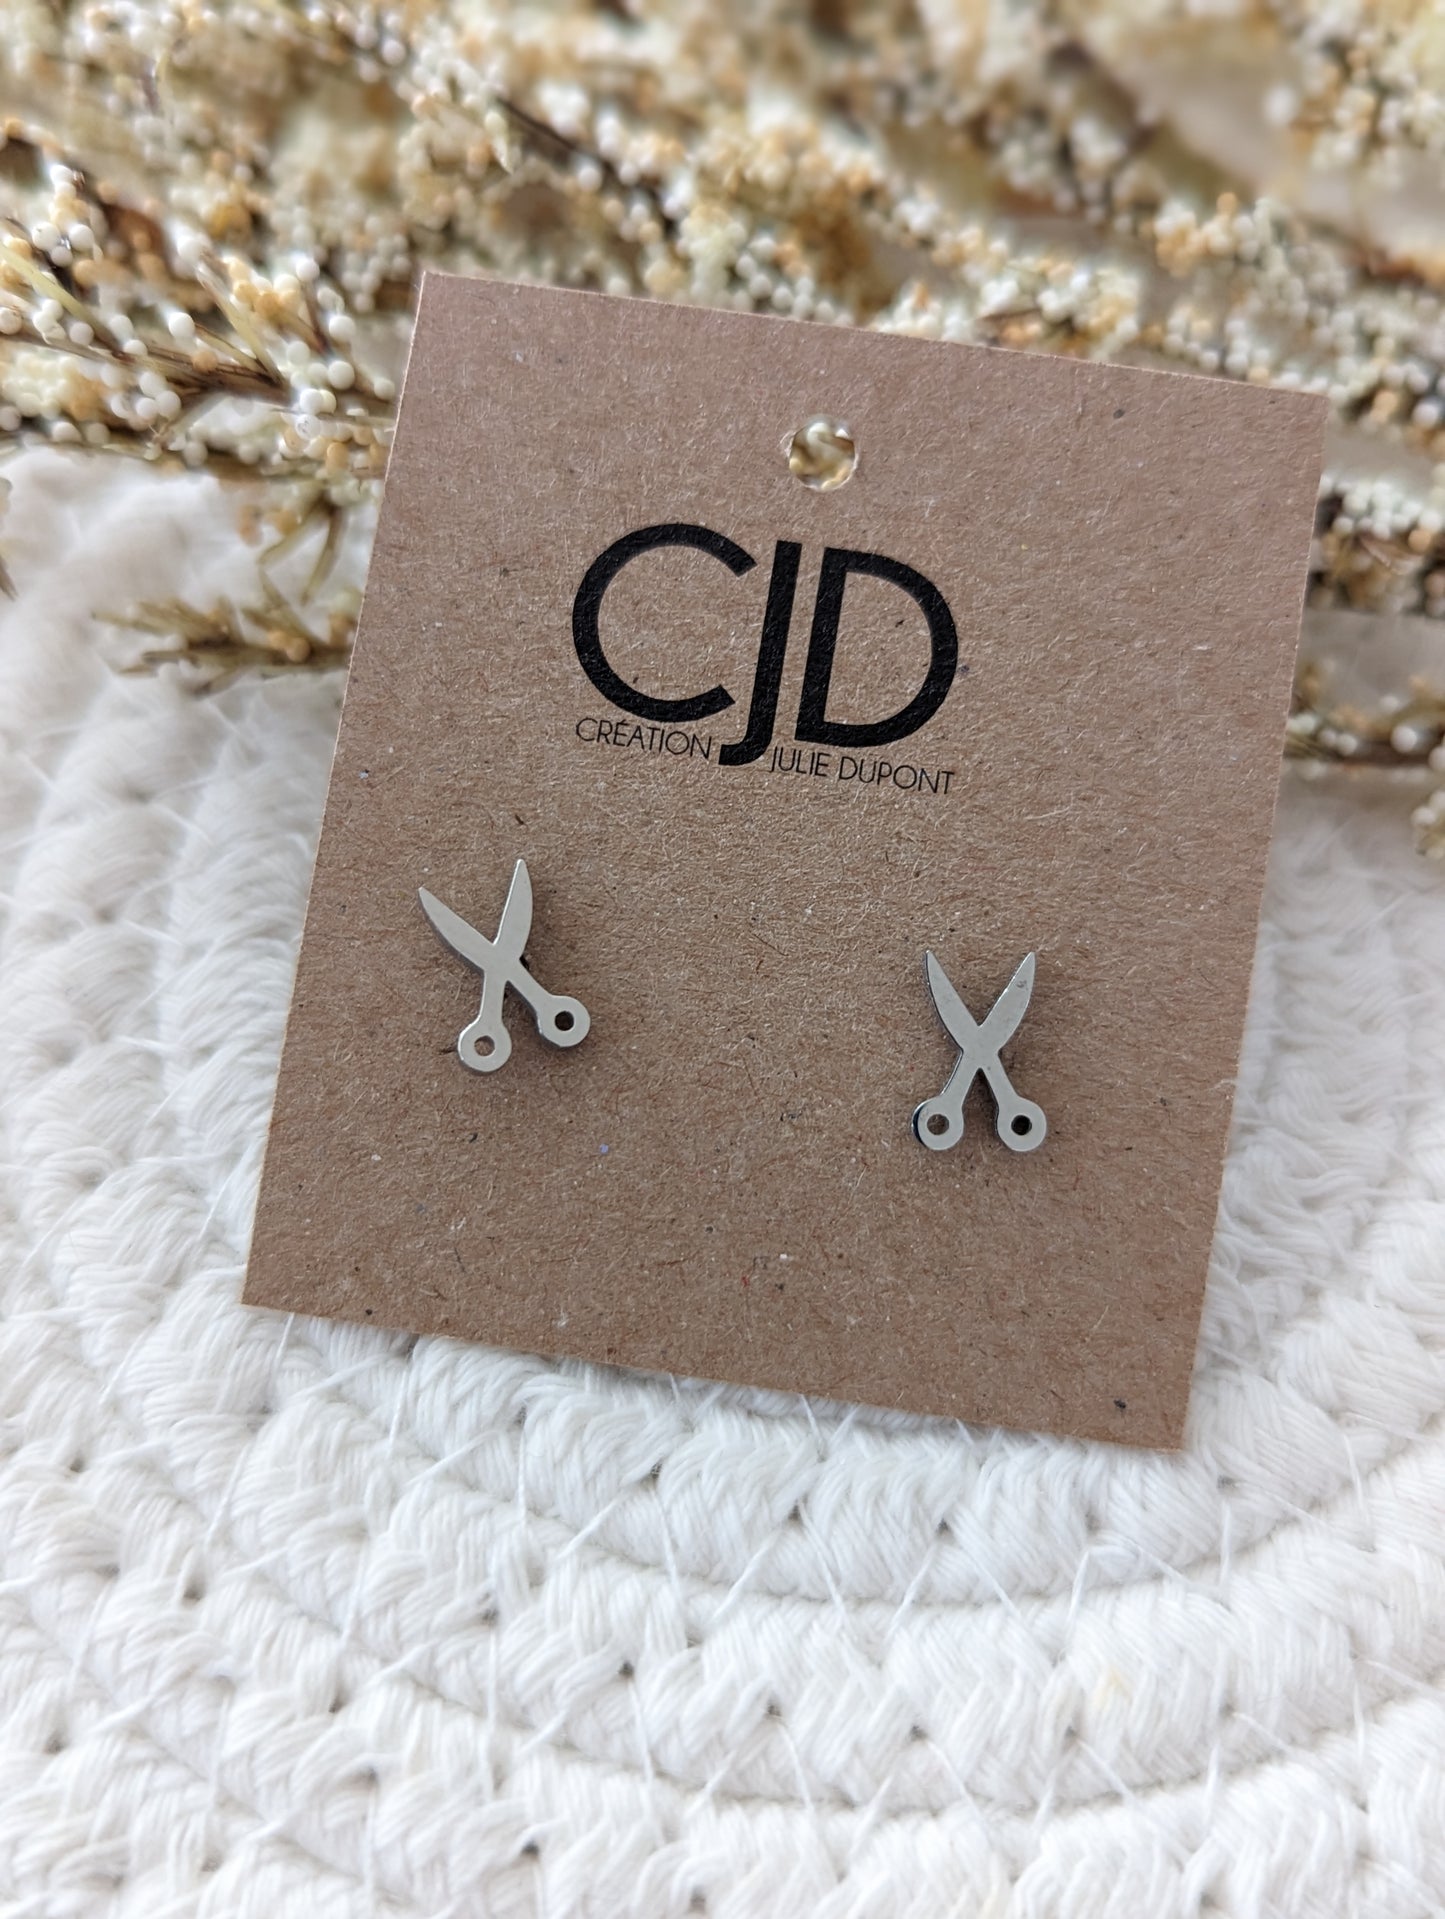 Boucles d'oreilles ciseau // scissor stud earrings // stainless steel earrings // minimalist jewelry // (bo-1652)